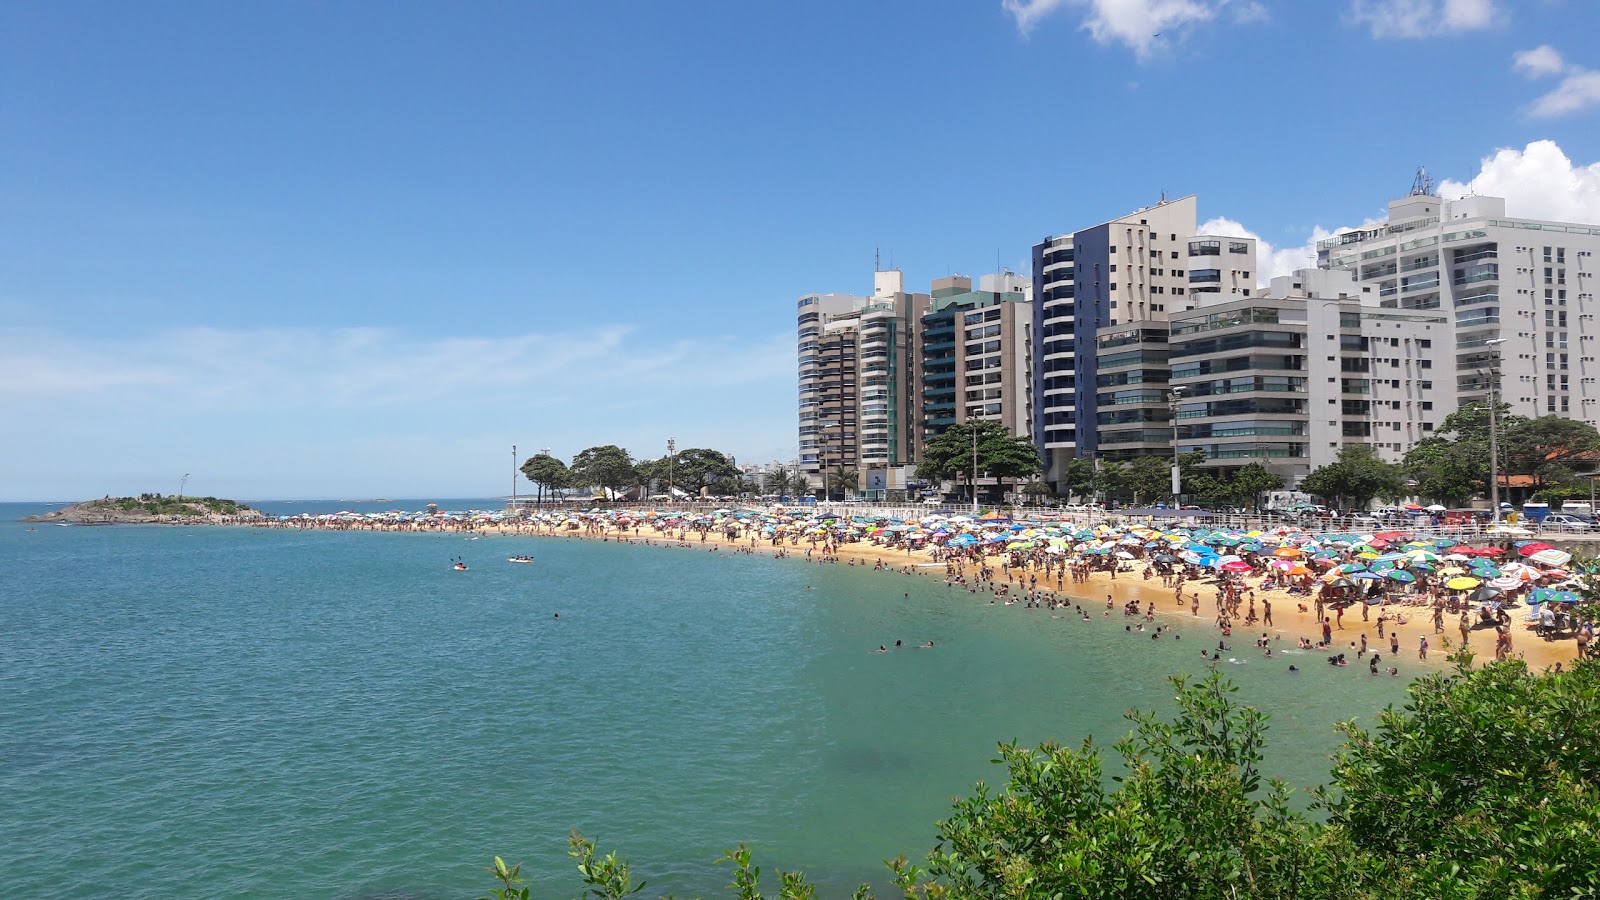 Sereia Plajı'in fotoğrafı geniş plaj ile birlikte